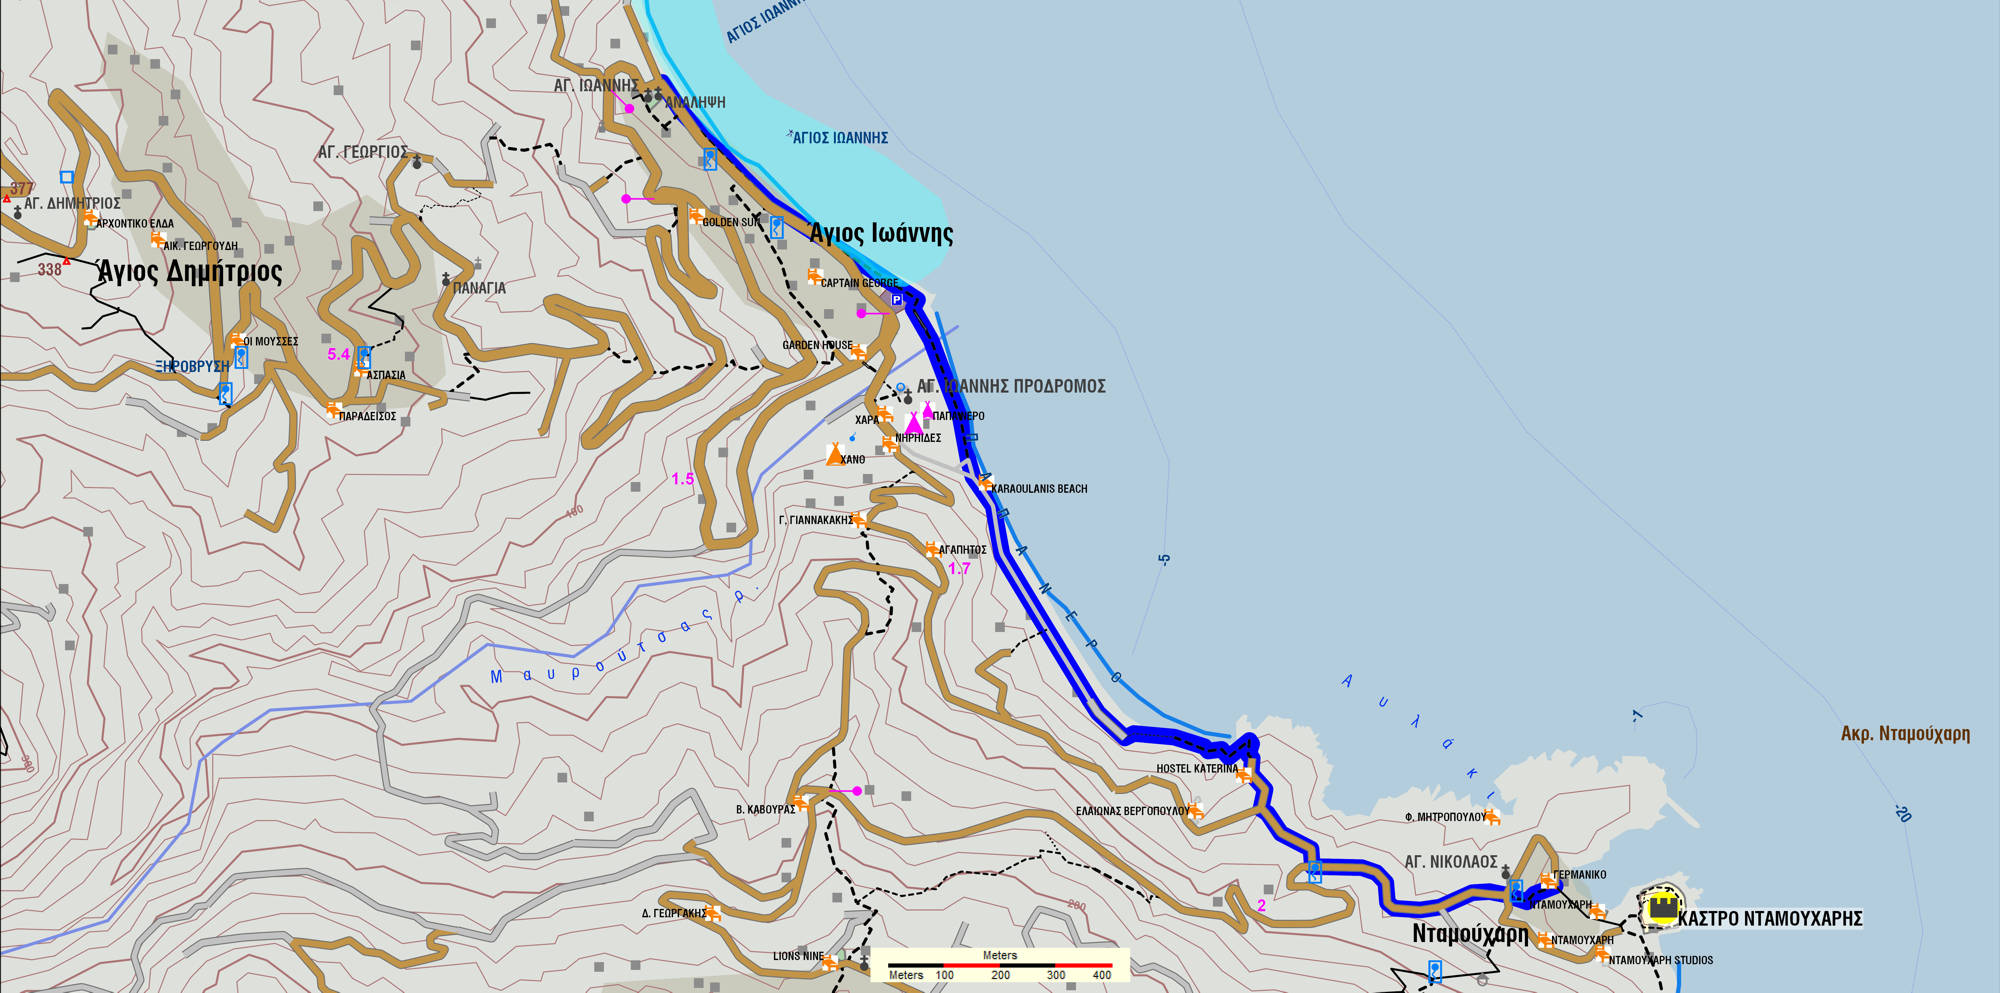 Ανατολικό Πήλιο topoguide: Διαδρομή Νταμούχαρη-Άγιος Ιωάννης